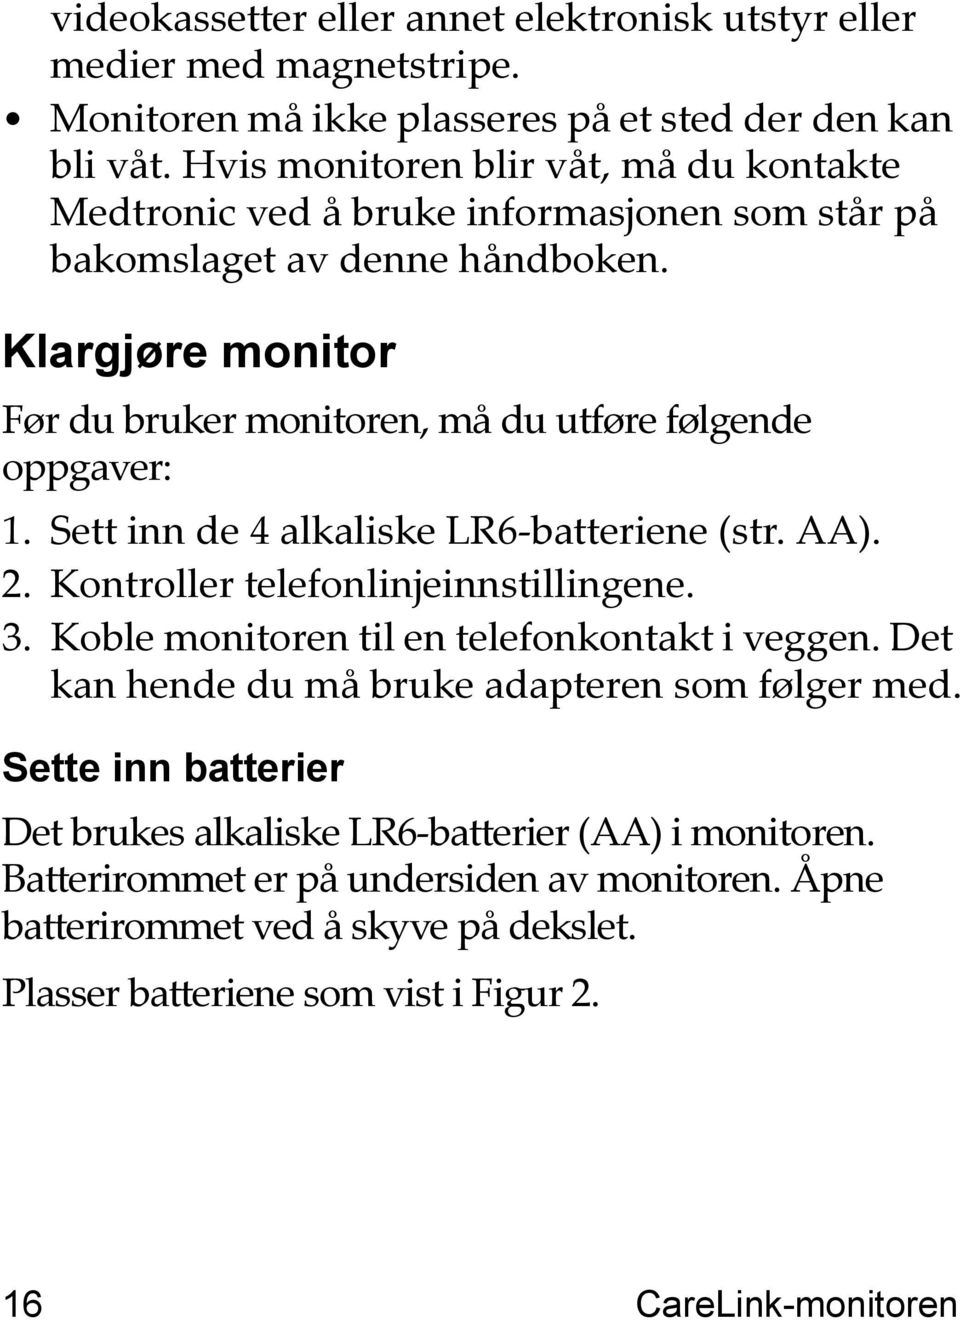 Klargjøre monitor Før du bruker monitoren, må du utføre følgende oppgaver: 1. Sett inn de 4 alkaliske LR6-batteriene (str. AA). 2. Kontroller telefonlinjeinnstillingene. 3.